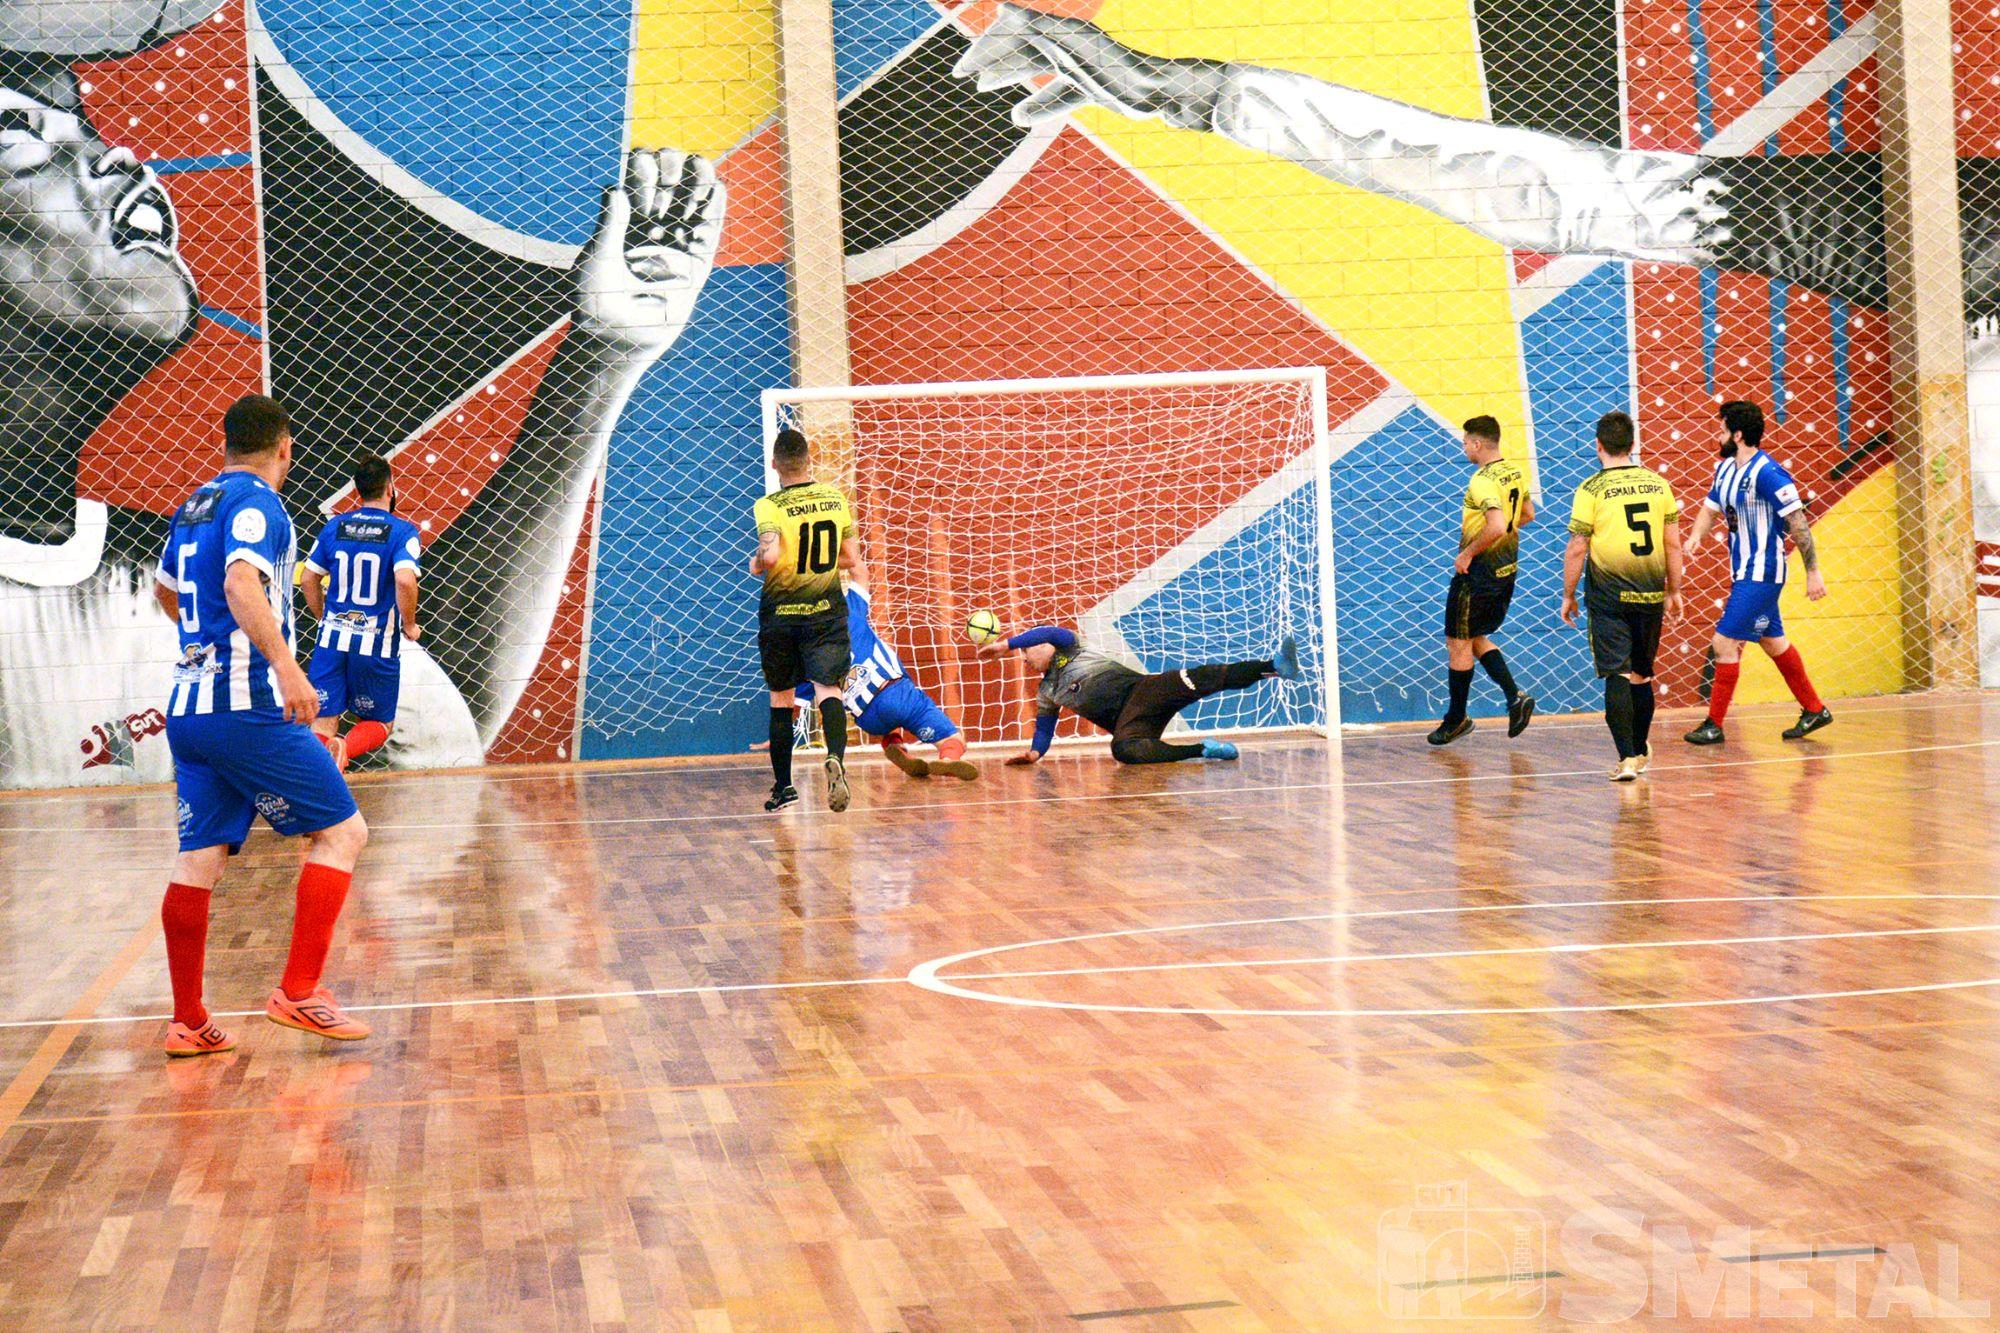 Segunda rodada da 15ª Taça Papagaio de Futsal,  no Clube dos Metalúrgicos, futsal,  taça,  papagaio,  torneio,  jogo,  partida,  rodada,  segunda,  , Foguinho/Imprensa SMetal, Confira os resultados da segunda rodada da Taça Papagaio de Futsal